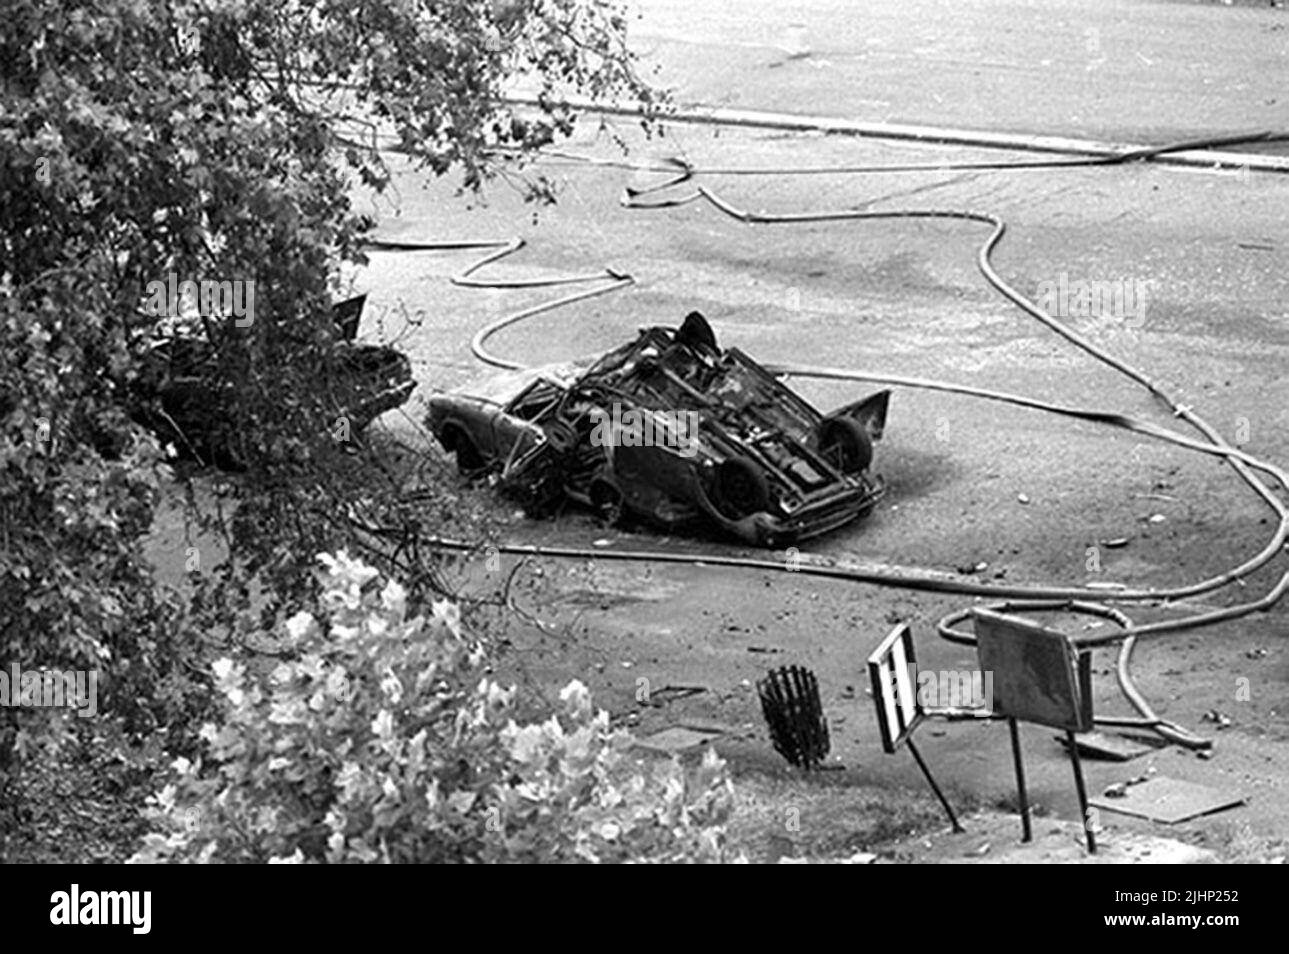 Photo de dossier datée du 20/7/1982 d'une mini voiture à l'envers sur le toit d'une autre voiture à Rotten Row, Londres, après qu'une voiture piégée a roué un groupe de Cavalyman qui a passé sur leur chemin à la cérémonie de changement de la garde à Whitehall. Les familles de soldats tués dans les attentats à la bombe de Hyde Park et Regent's Park IRA ont dit que leurs souffrances restent indiminuées 40 ans plus tard. Au total, 11 militaires sont morts dans les deux attaques qui se sont produites à quelques heures l'une de l'autre à Londres sur 20 juillet 1982. Date de publication : mercredi 20 juillet 2022. Banque D'Images